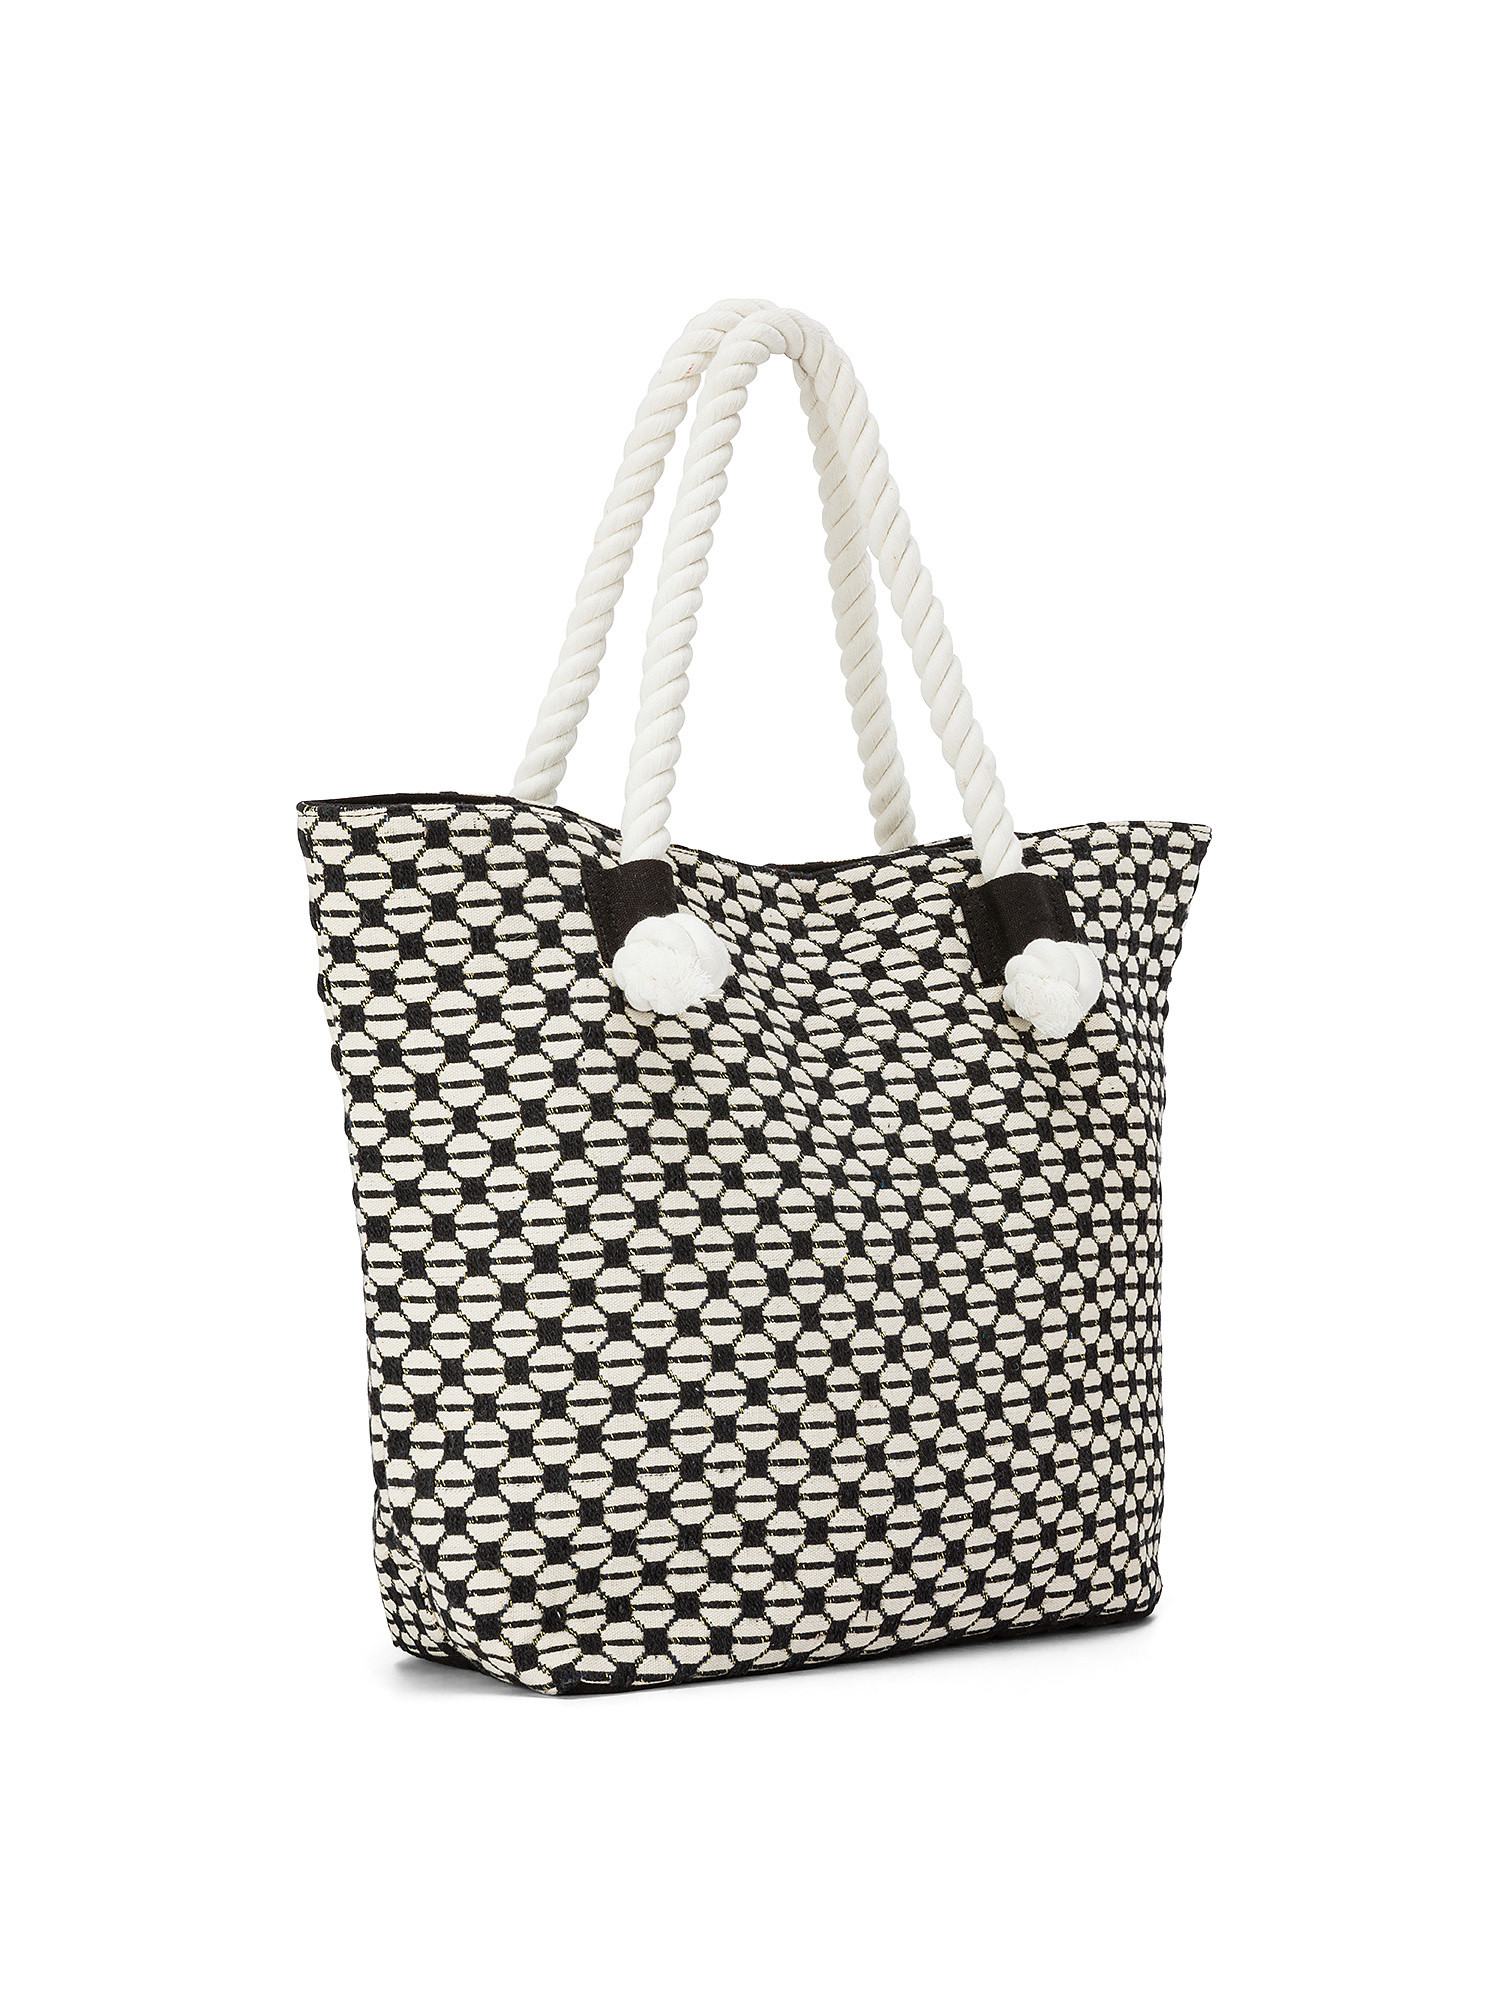 Koan - Shopping bag in jacquard fabric, White, large image number 1